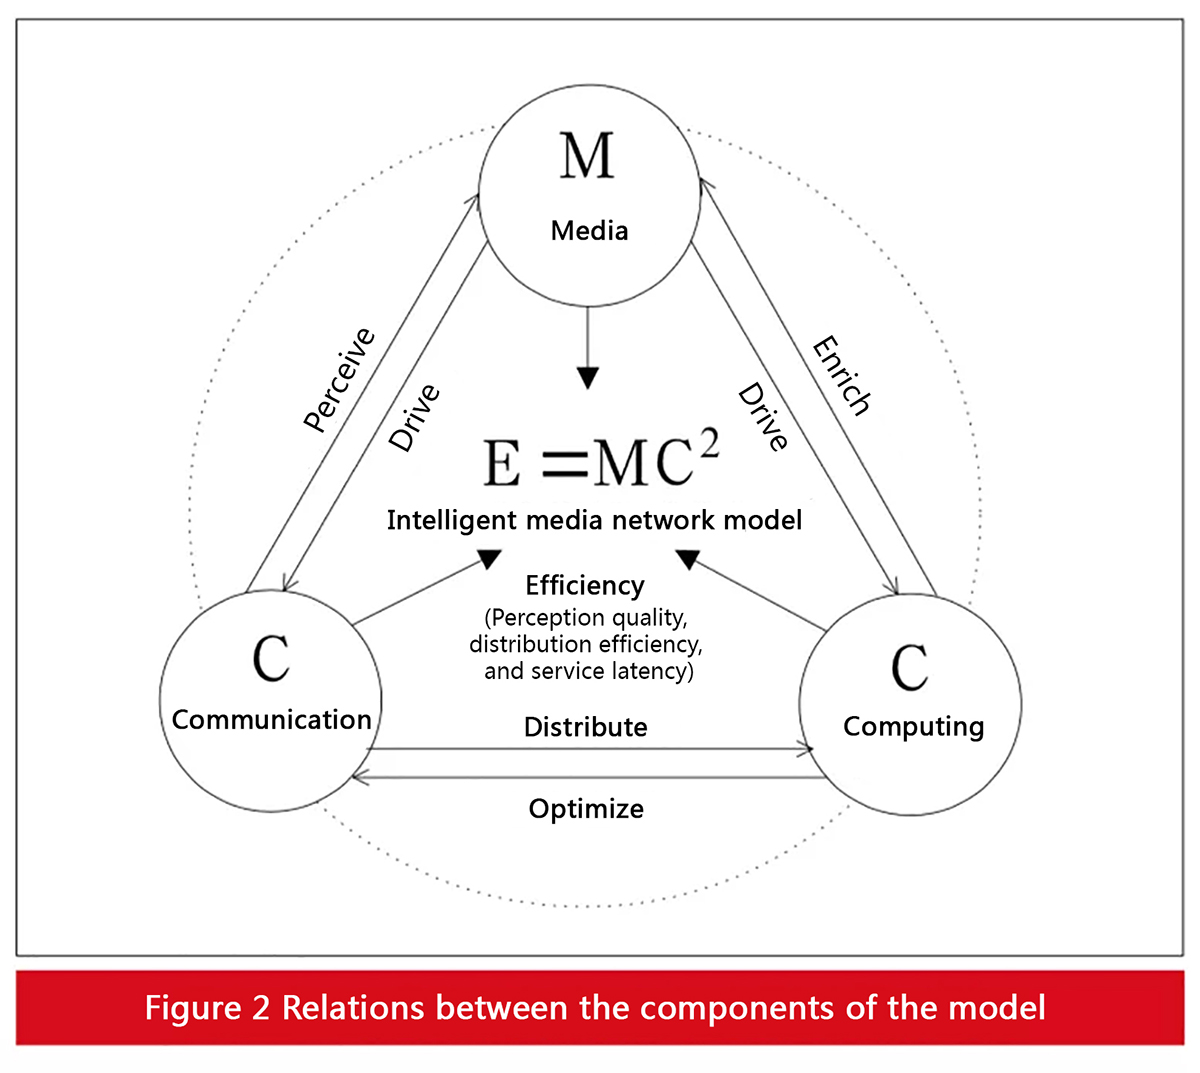 E = MC2 model